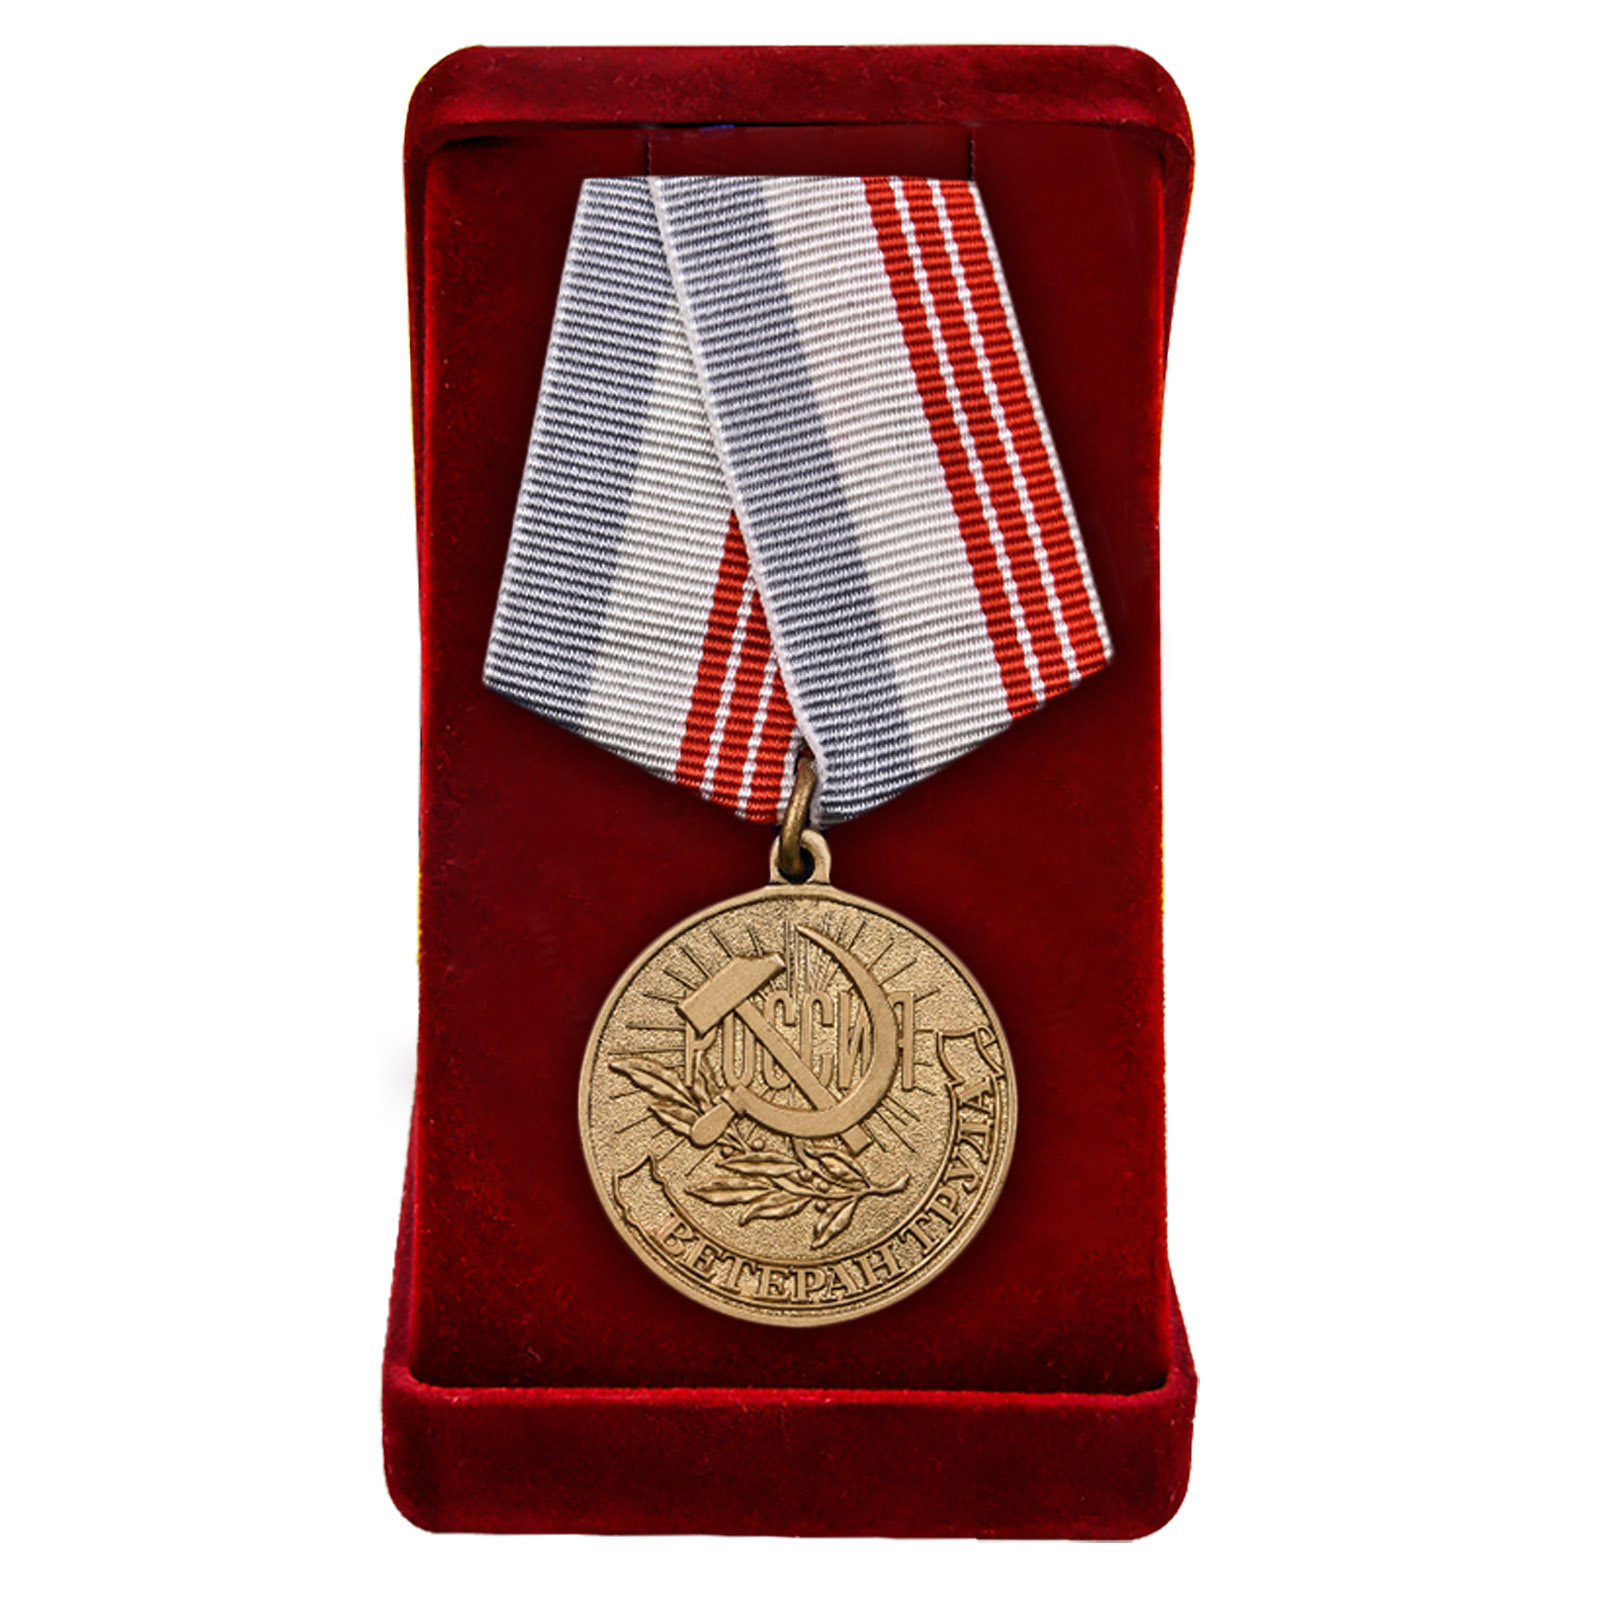 Купить латунную медаль Ветеран труда России оптом или в розницу